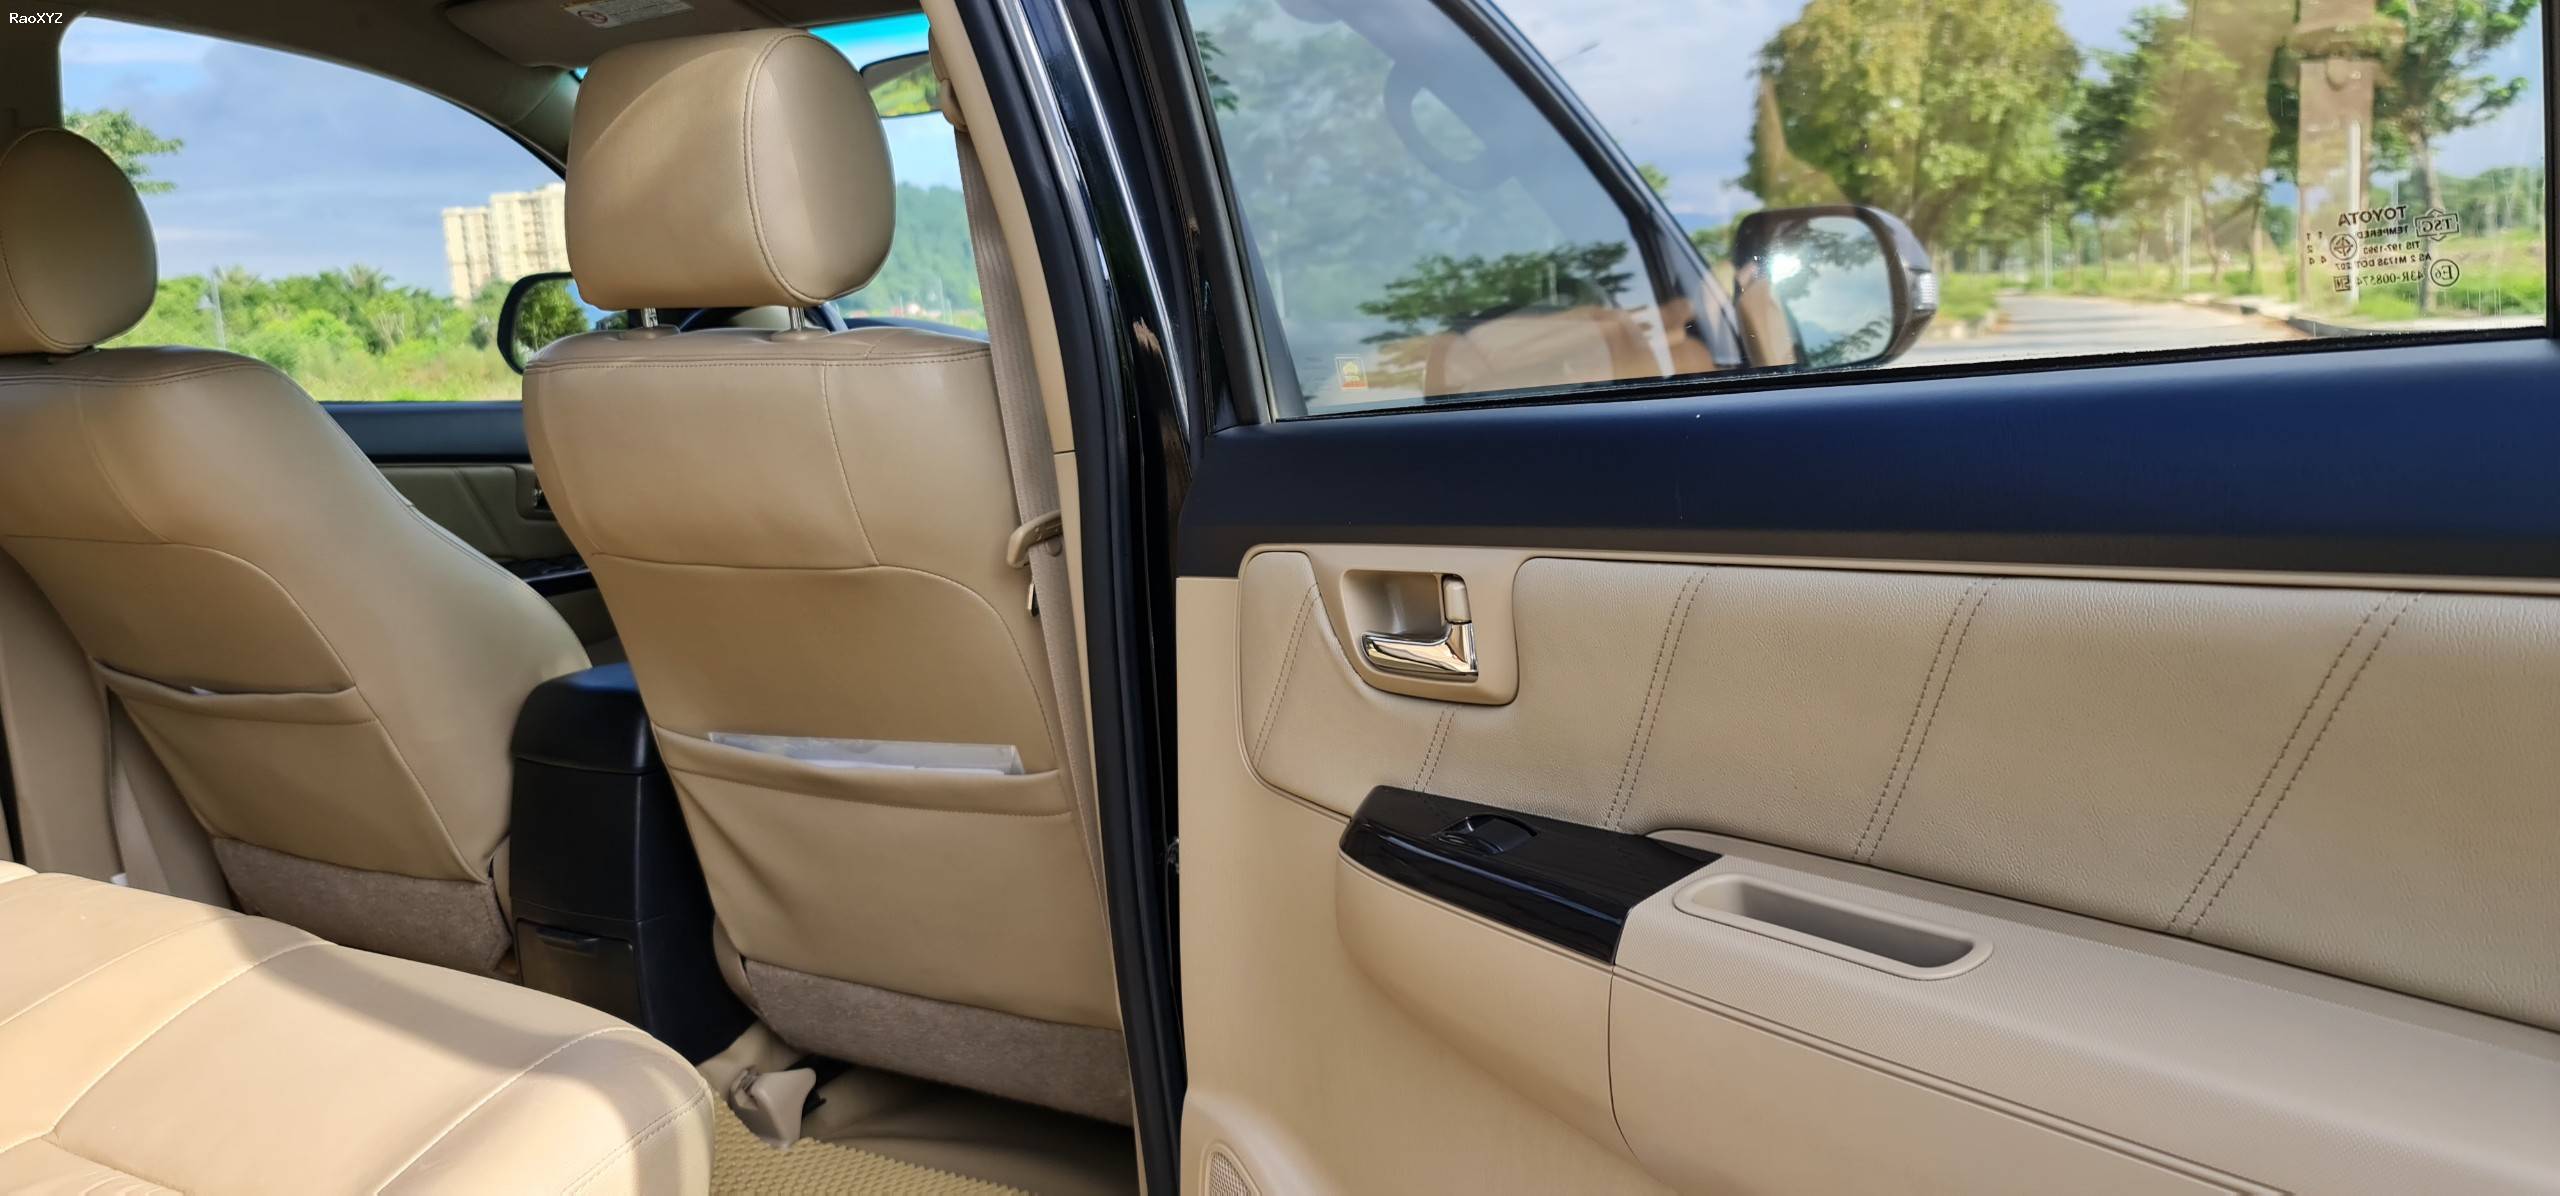 Chính chủ bán xe Toyota Fortuner đời 2015 màu đen nội thất kem, 2.7 một cầu máy xăng số tự động.